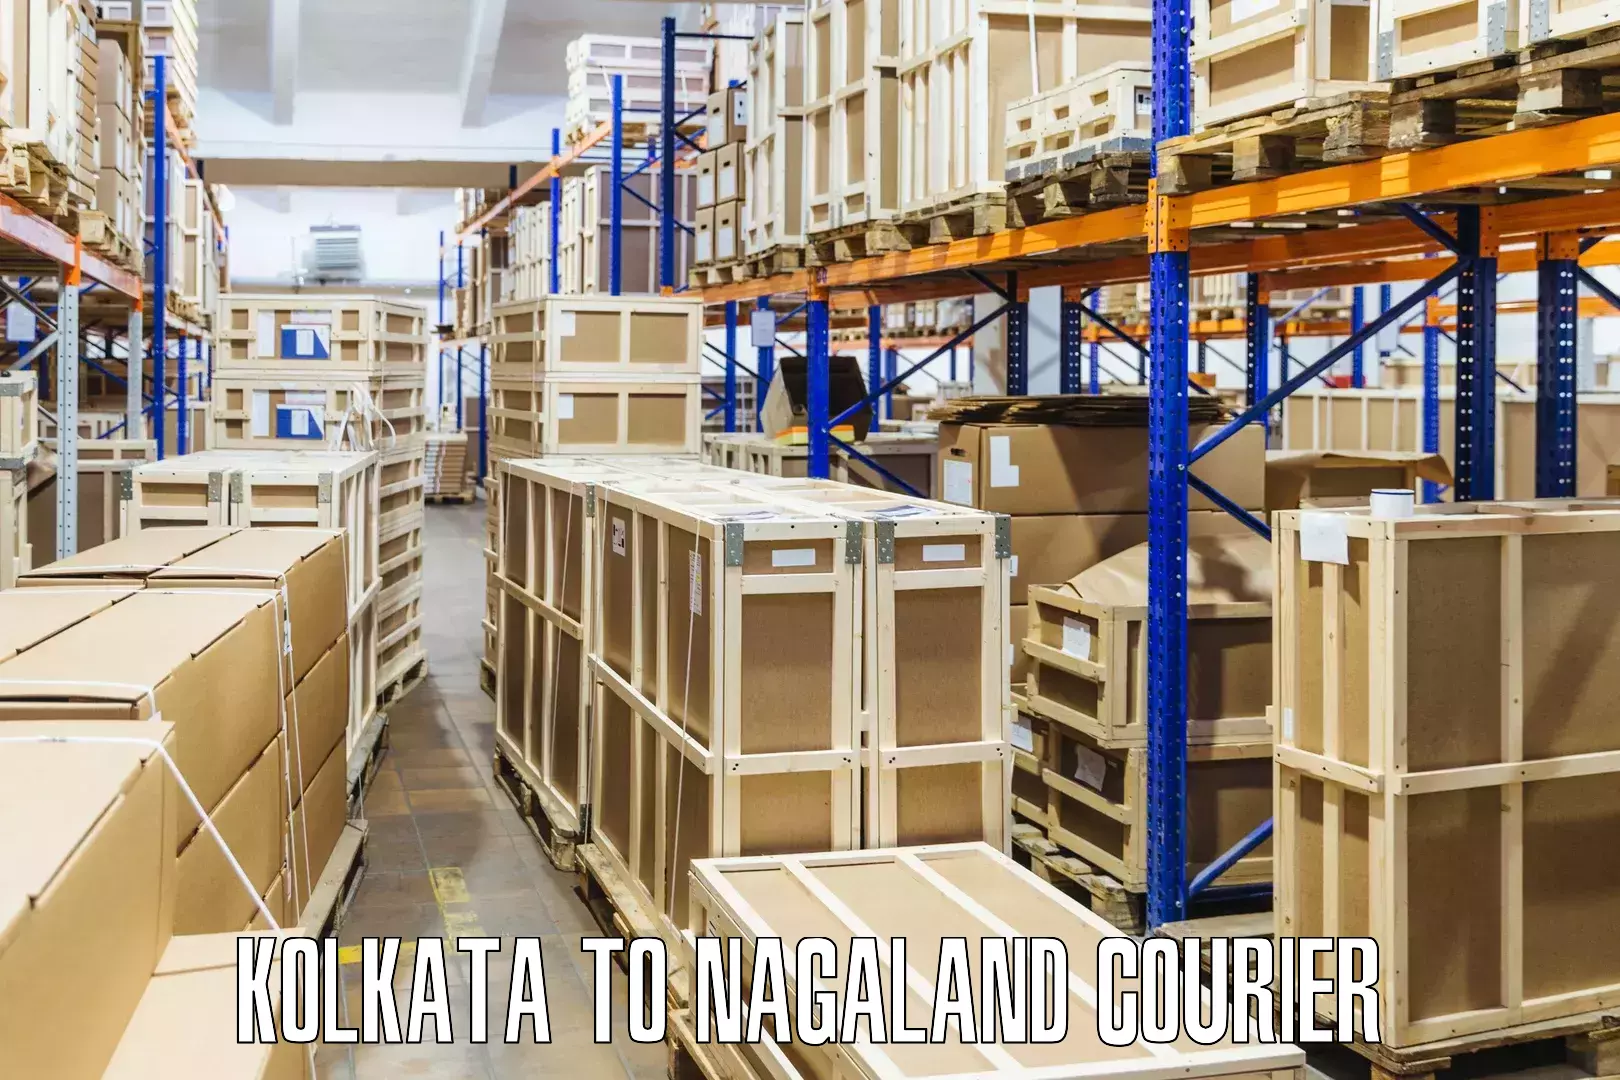 Individual parcel service Kolkata to Nagaland